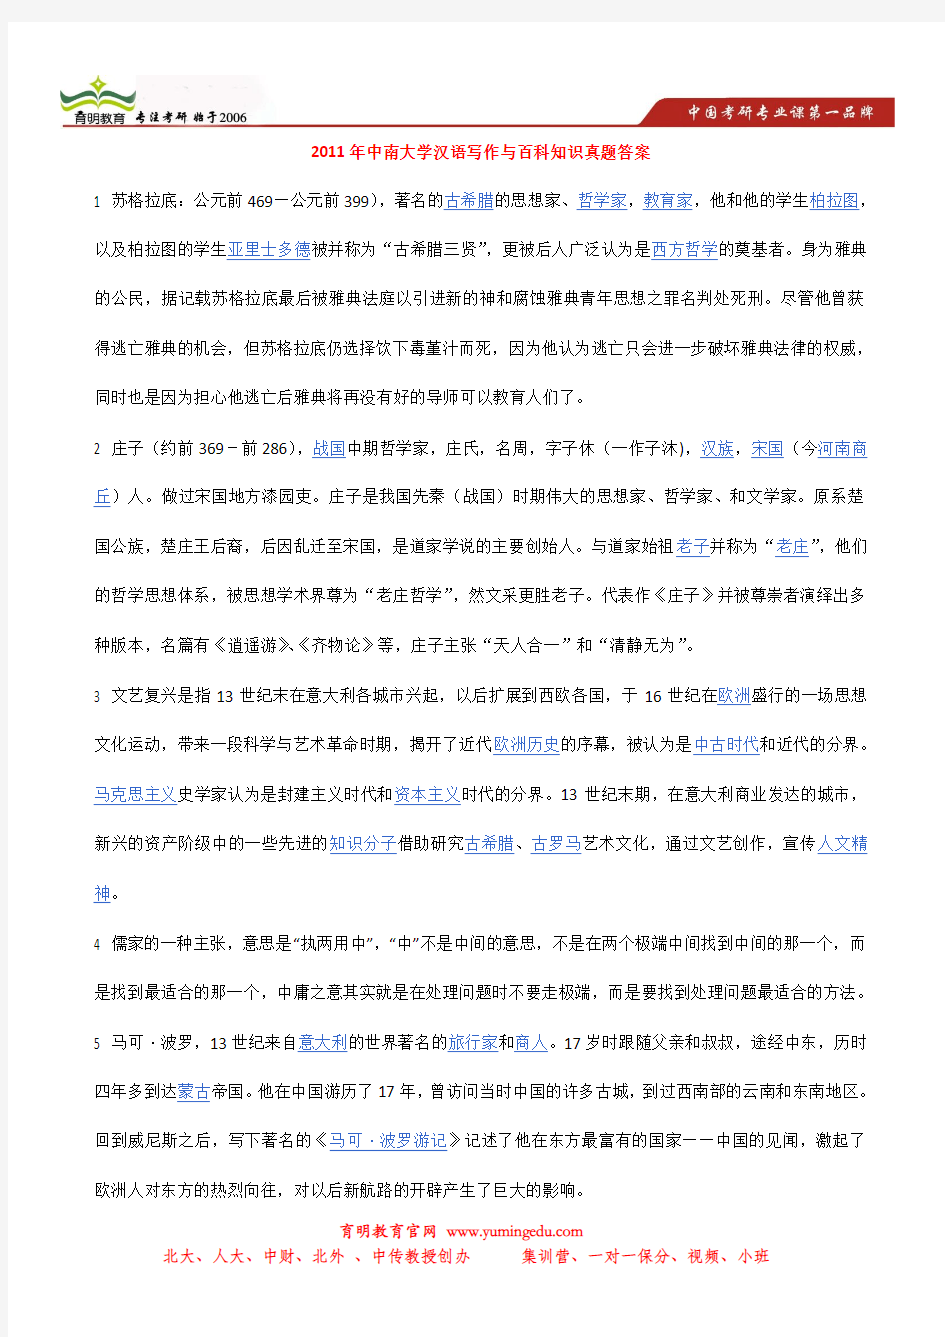 2013年中南大学翻译硕士考研真题,参考书目,招生人数,汉语写作与百科知识真题答案 (2)